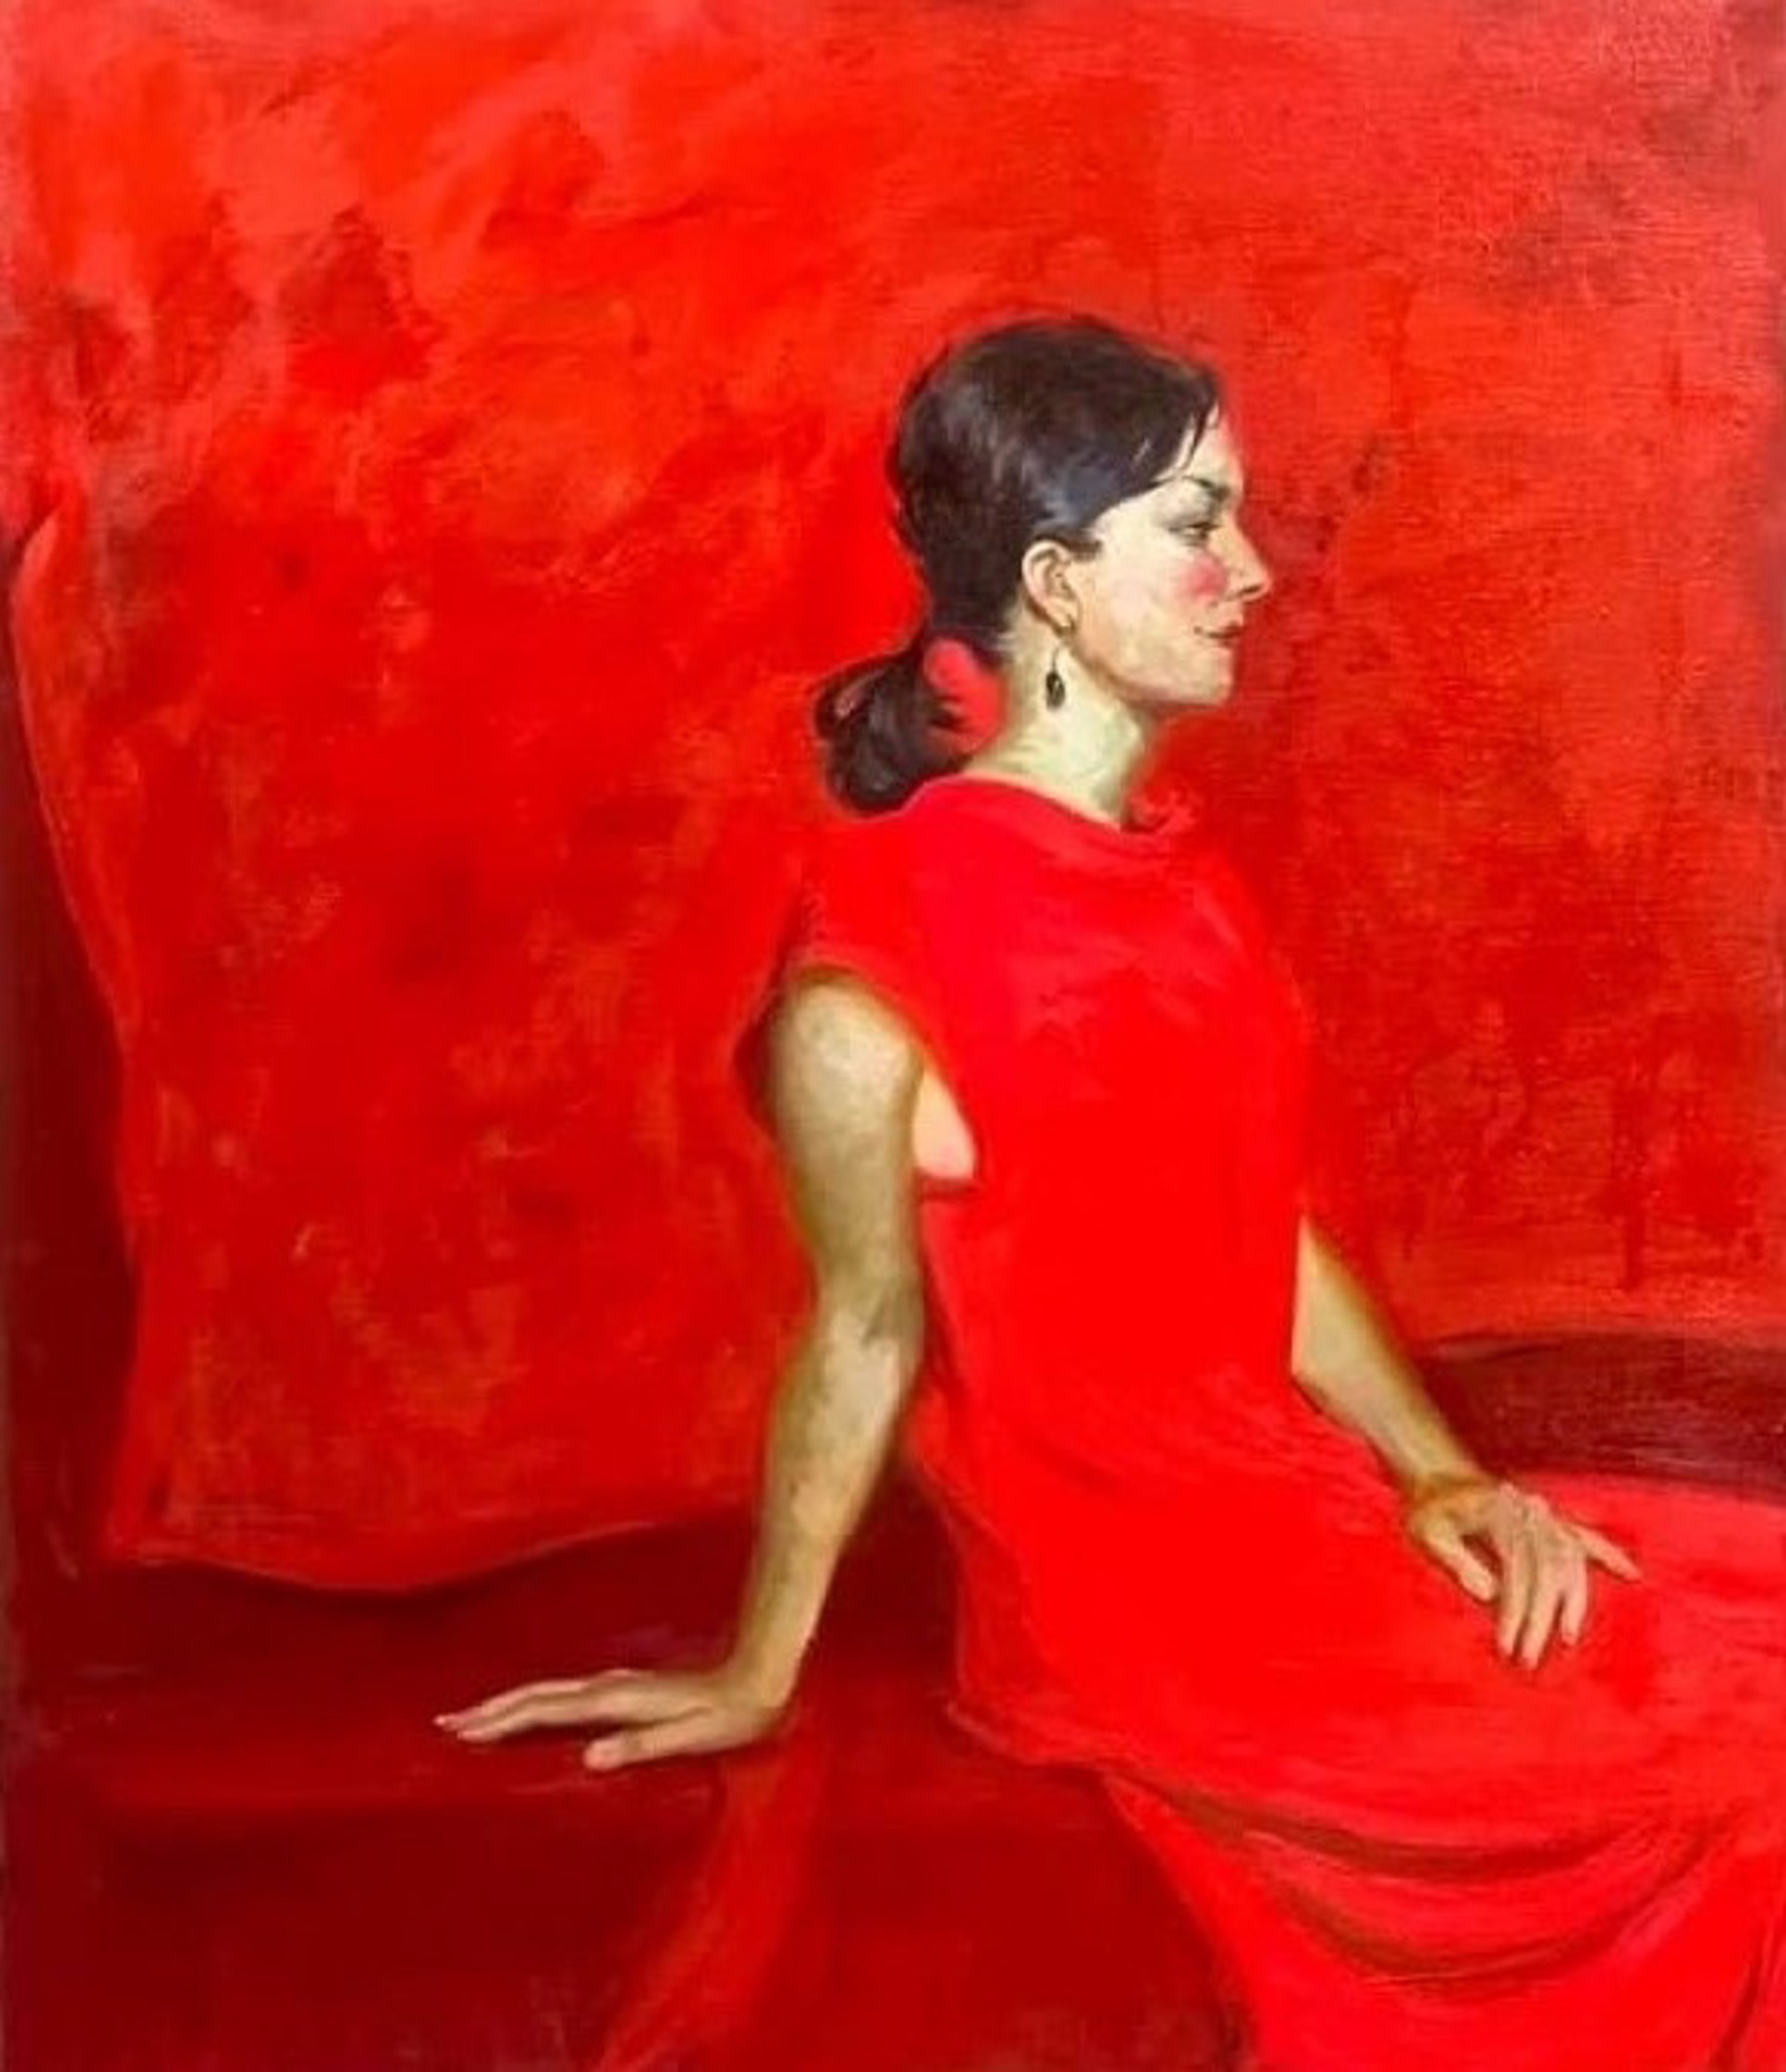 Portrait in Red by Ekaterina Bokotey